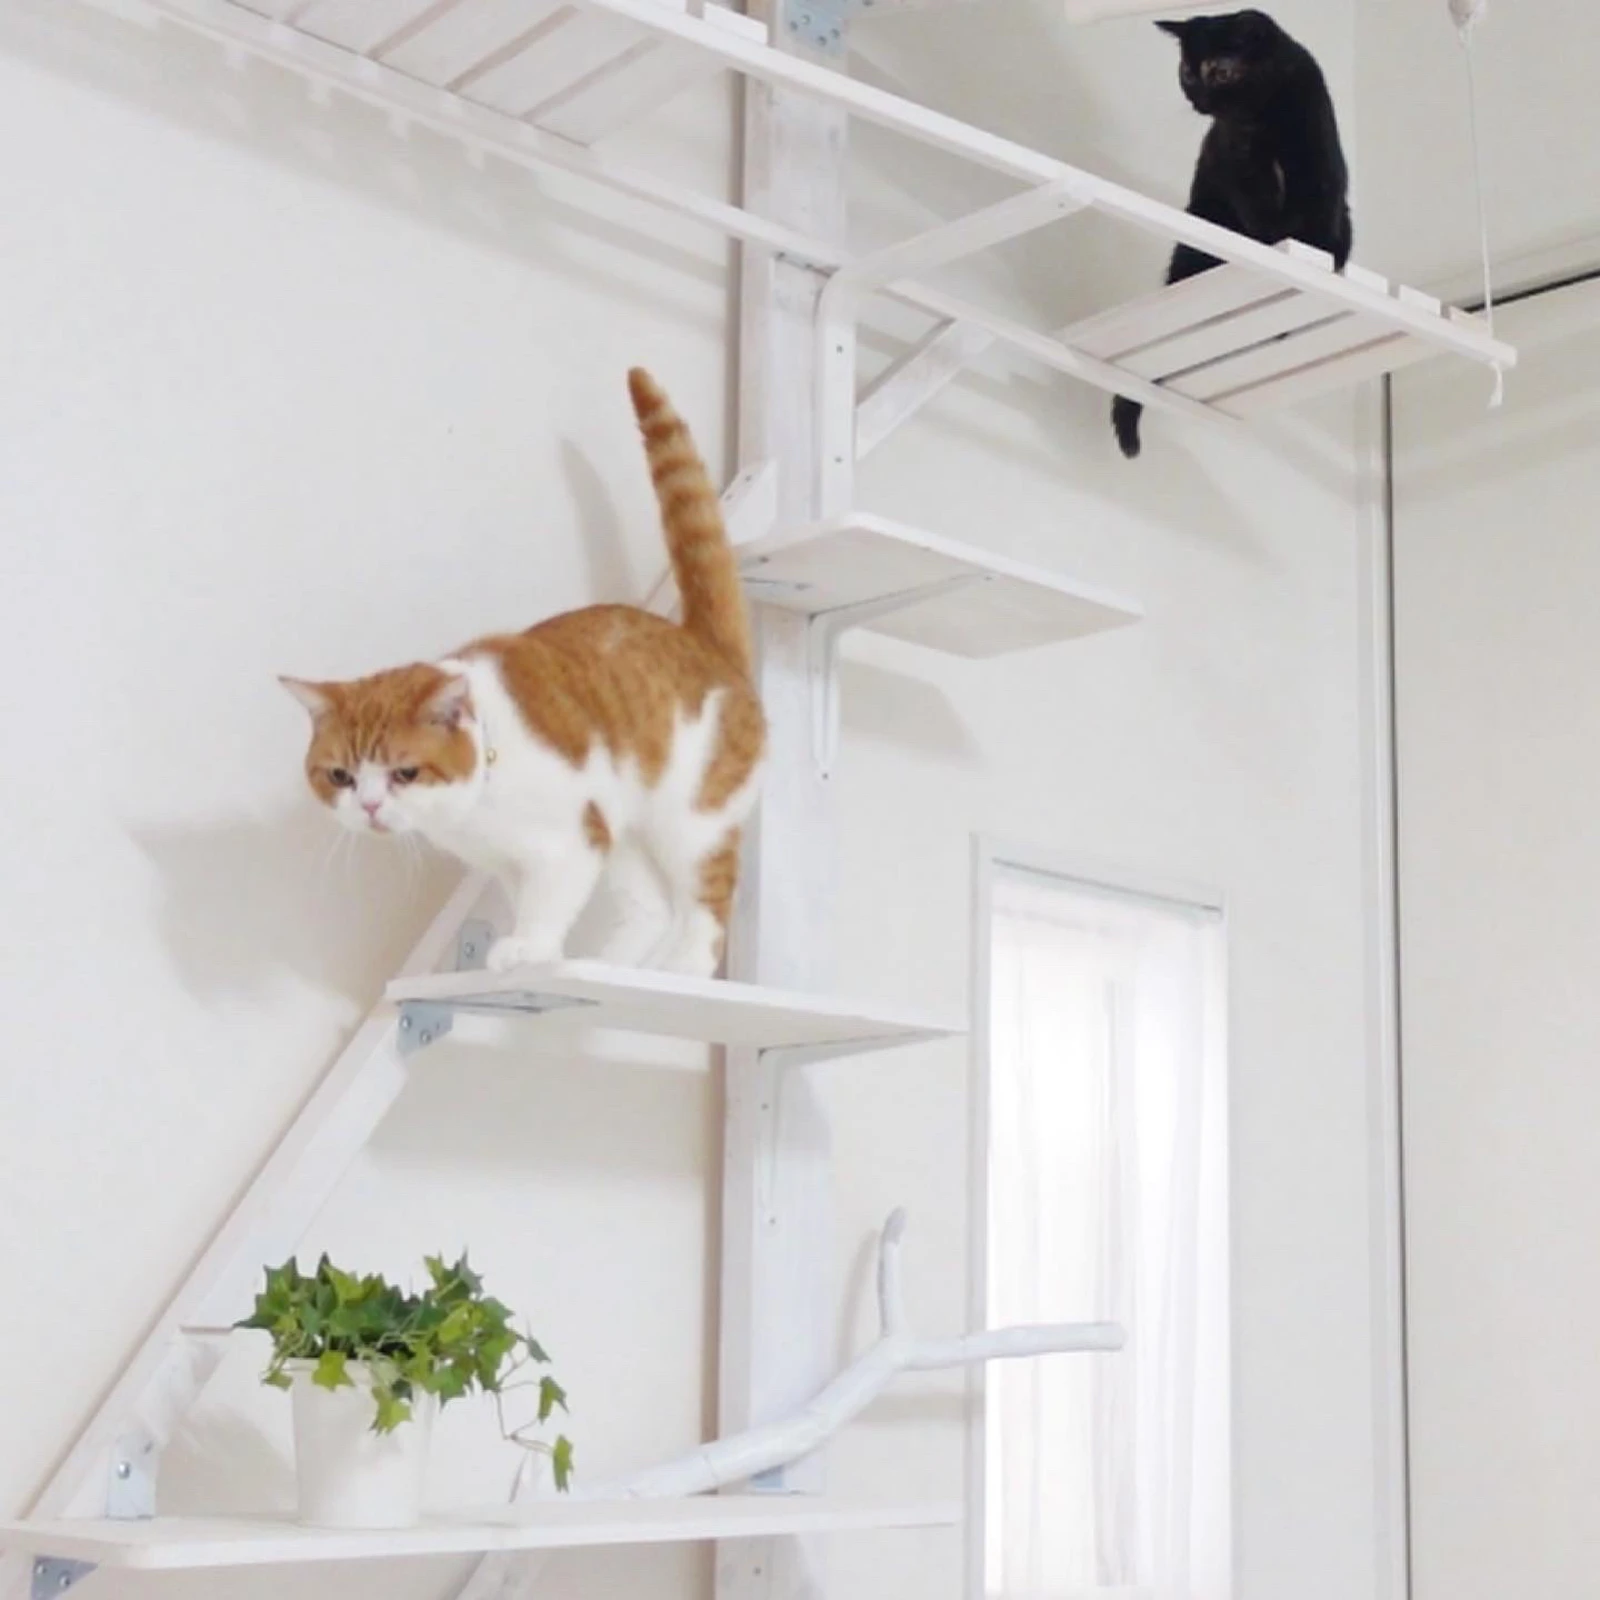 キャットタワーに登る猫がかわいい Pikeチャンネルが投稿したフォトブック Lemon8